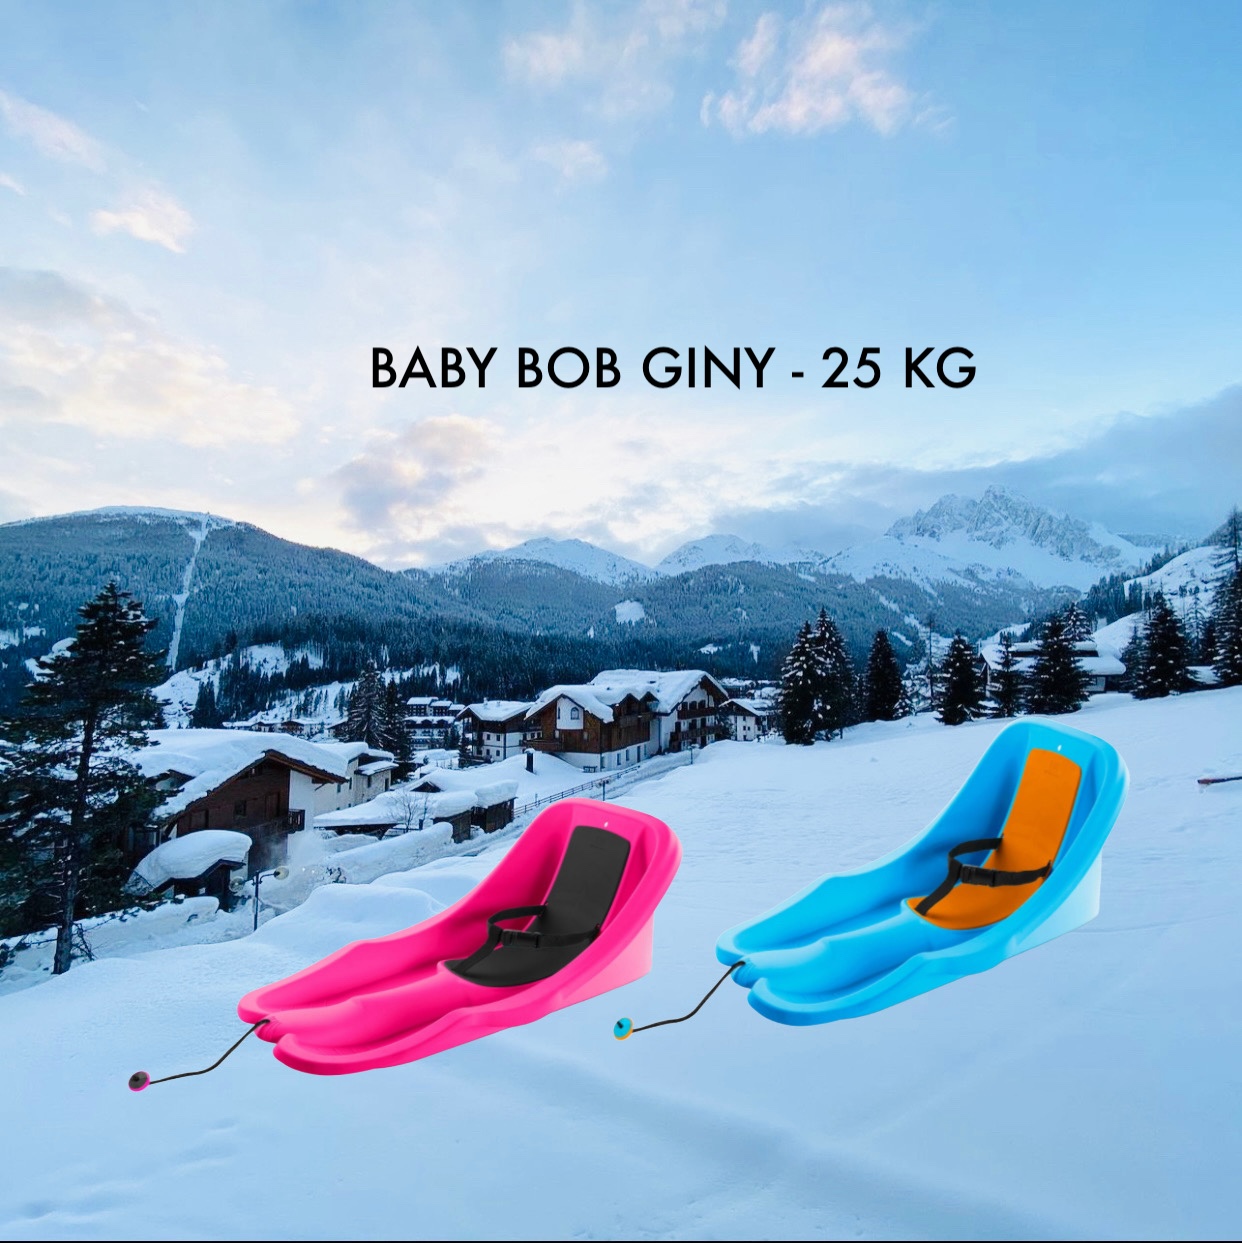 BABY BOB GINY – 25 KG